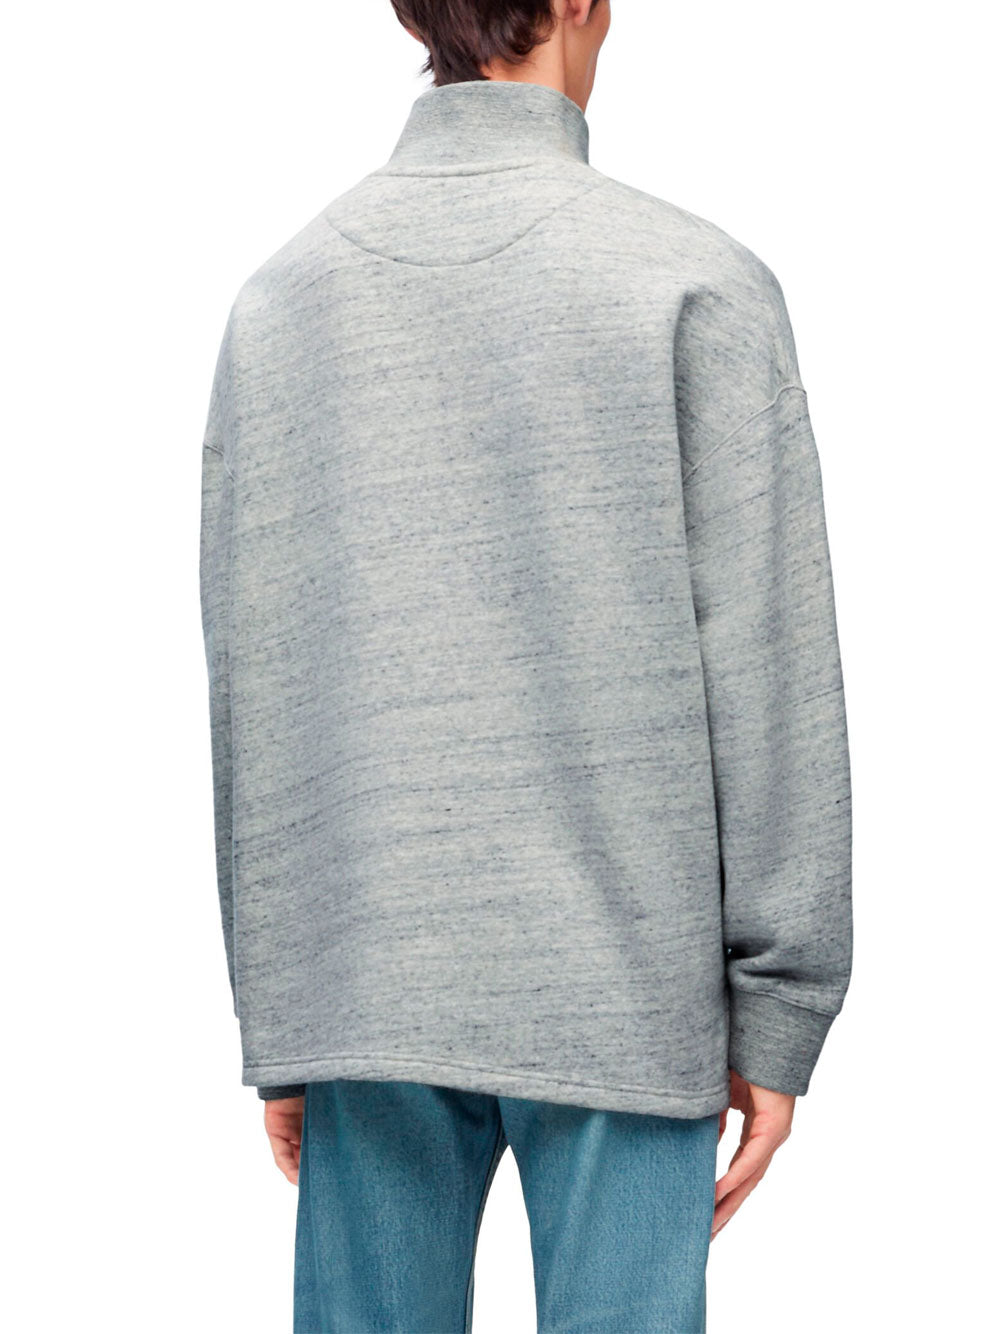 Turtleneck sweatshirt